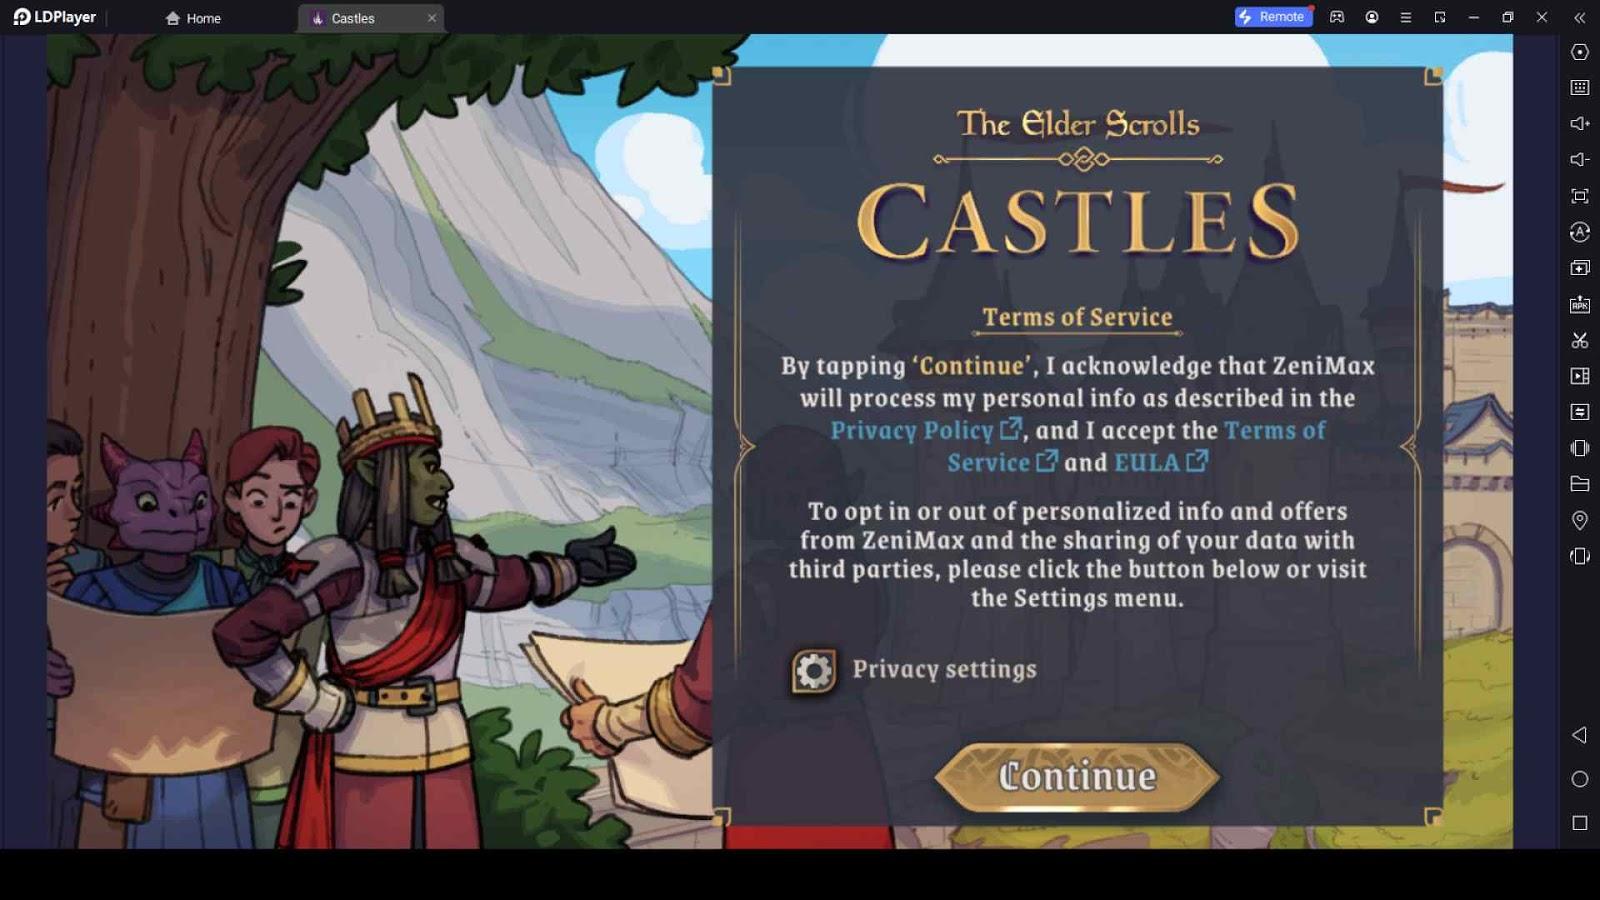 The Elder Scrolls: Castles Beginner Guide